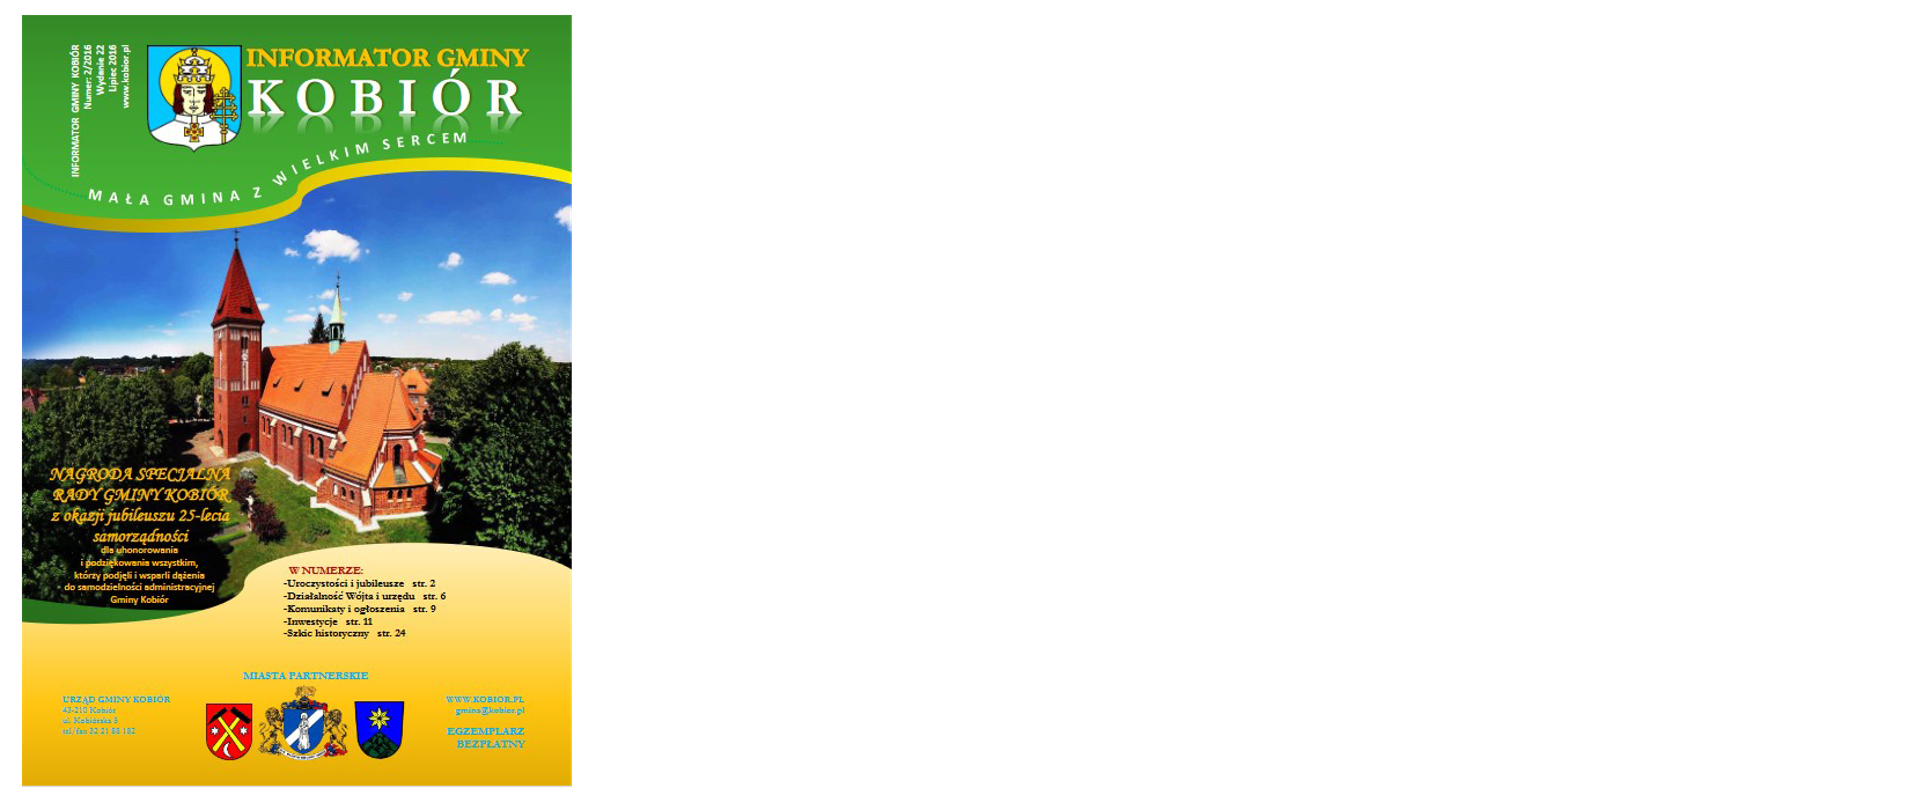 Zdjęcie przedstawia okładkę informatora Gminy Kobiór z lipca 2016 roku na której widać Herby Gminy Kobiór oraz miast partnerskich a także kościół parafialny